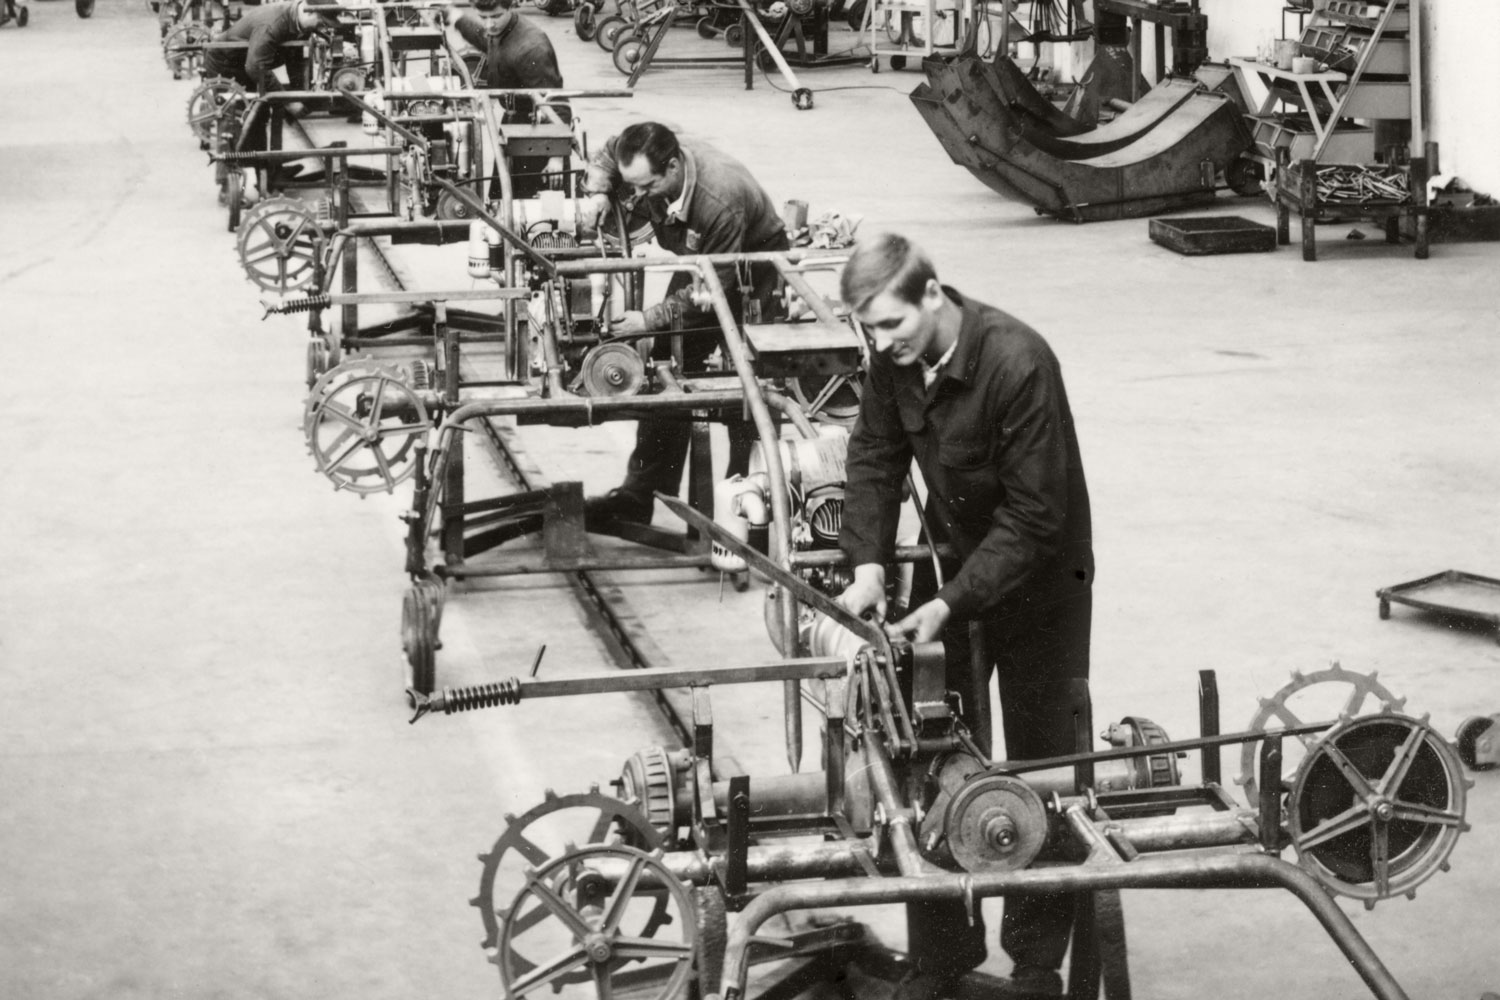 Зображення, як зі старого підручника з промислового монтажу:  виробництво валкувачів на новому заводі II компанії PÖTTINGER.